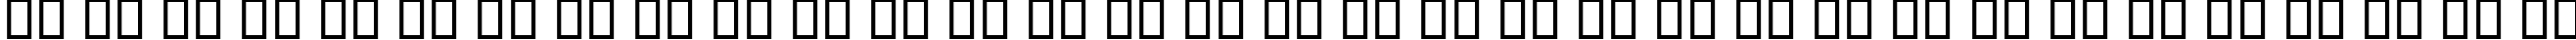 Пример написания русского алфавита шрифтом B Setareh